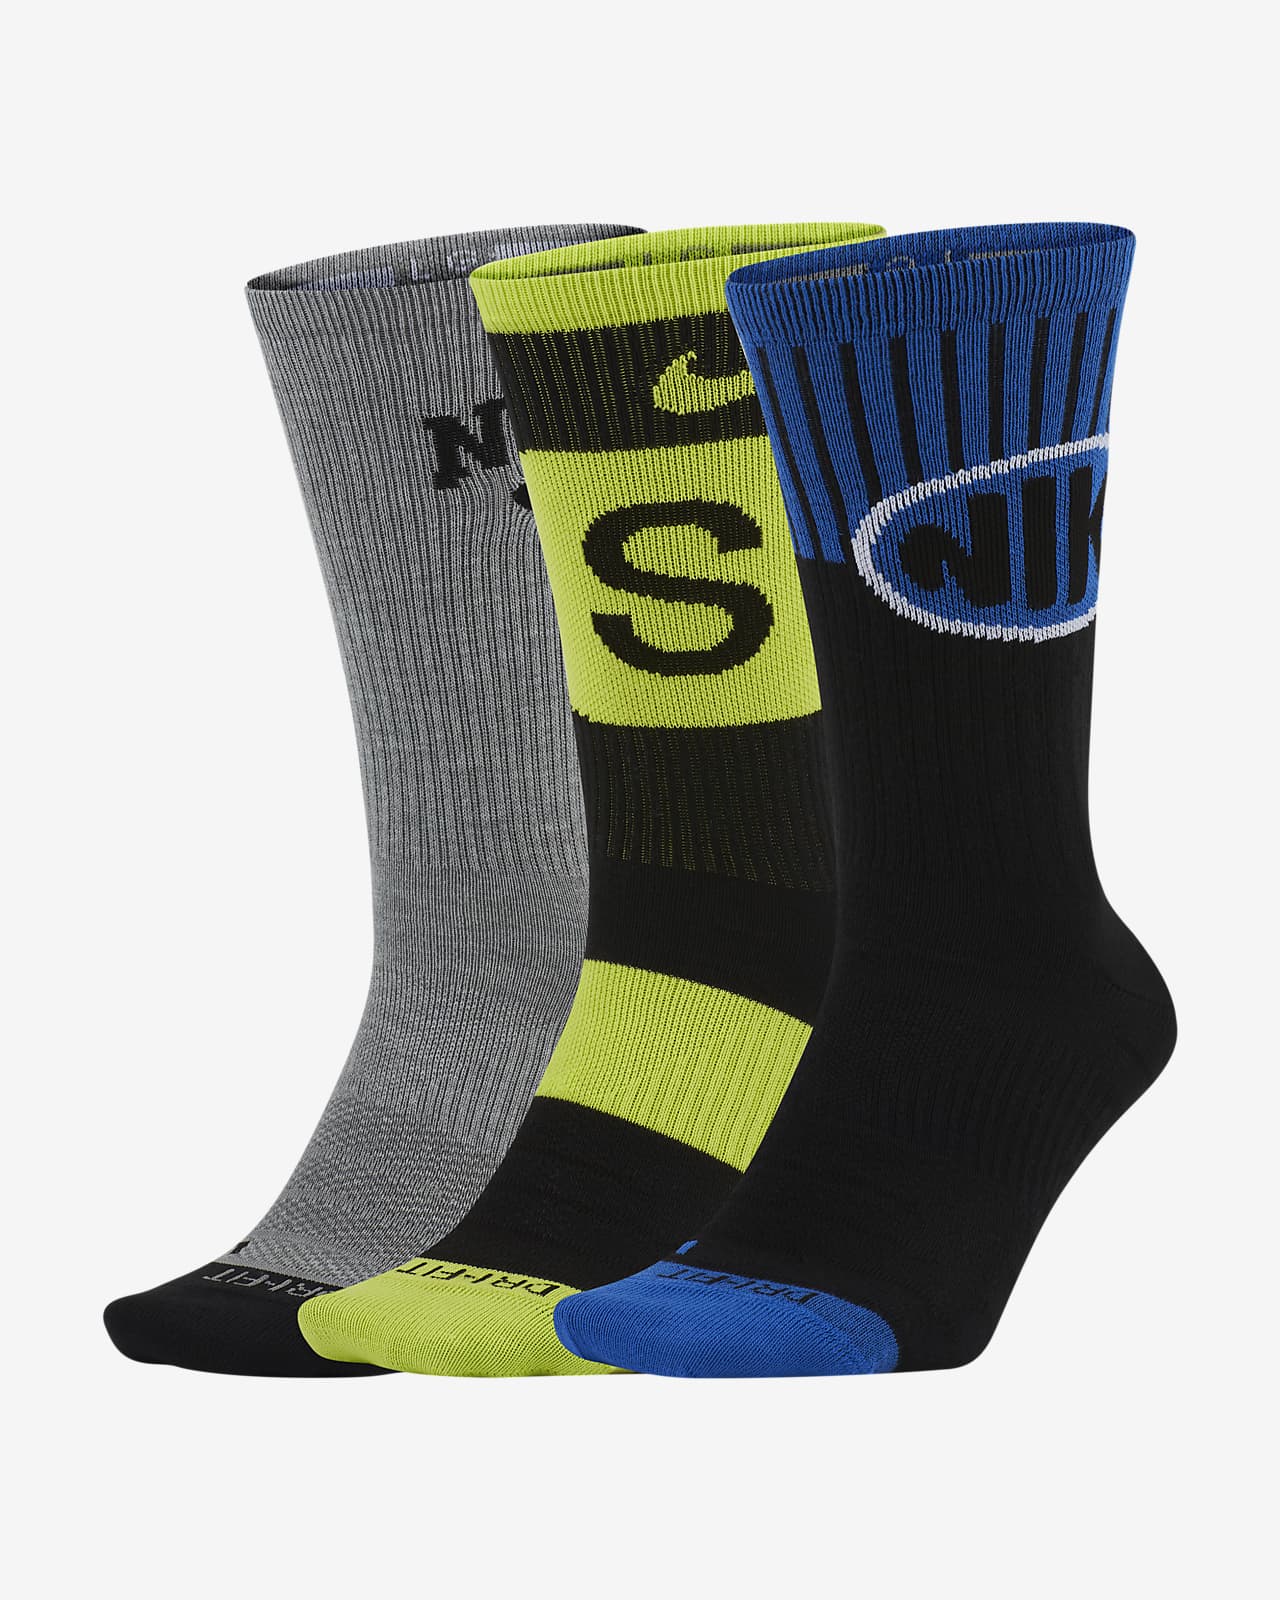 nike sb everyday socks